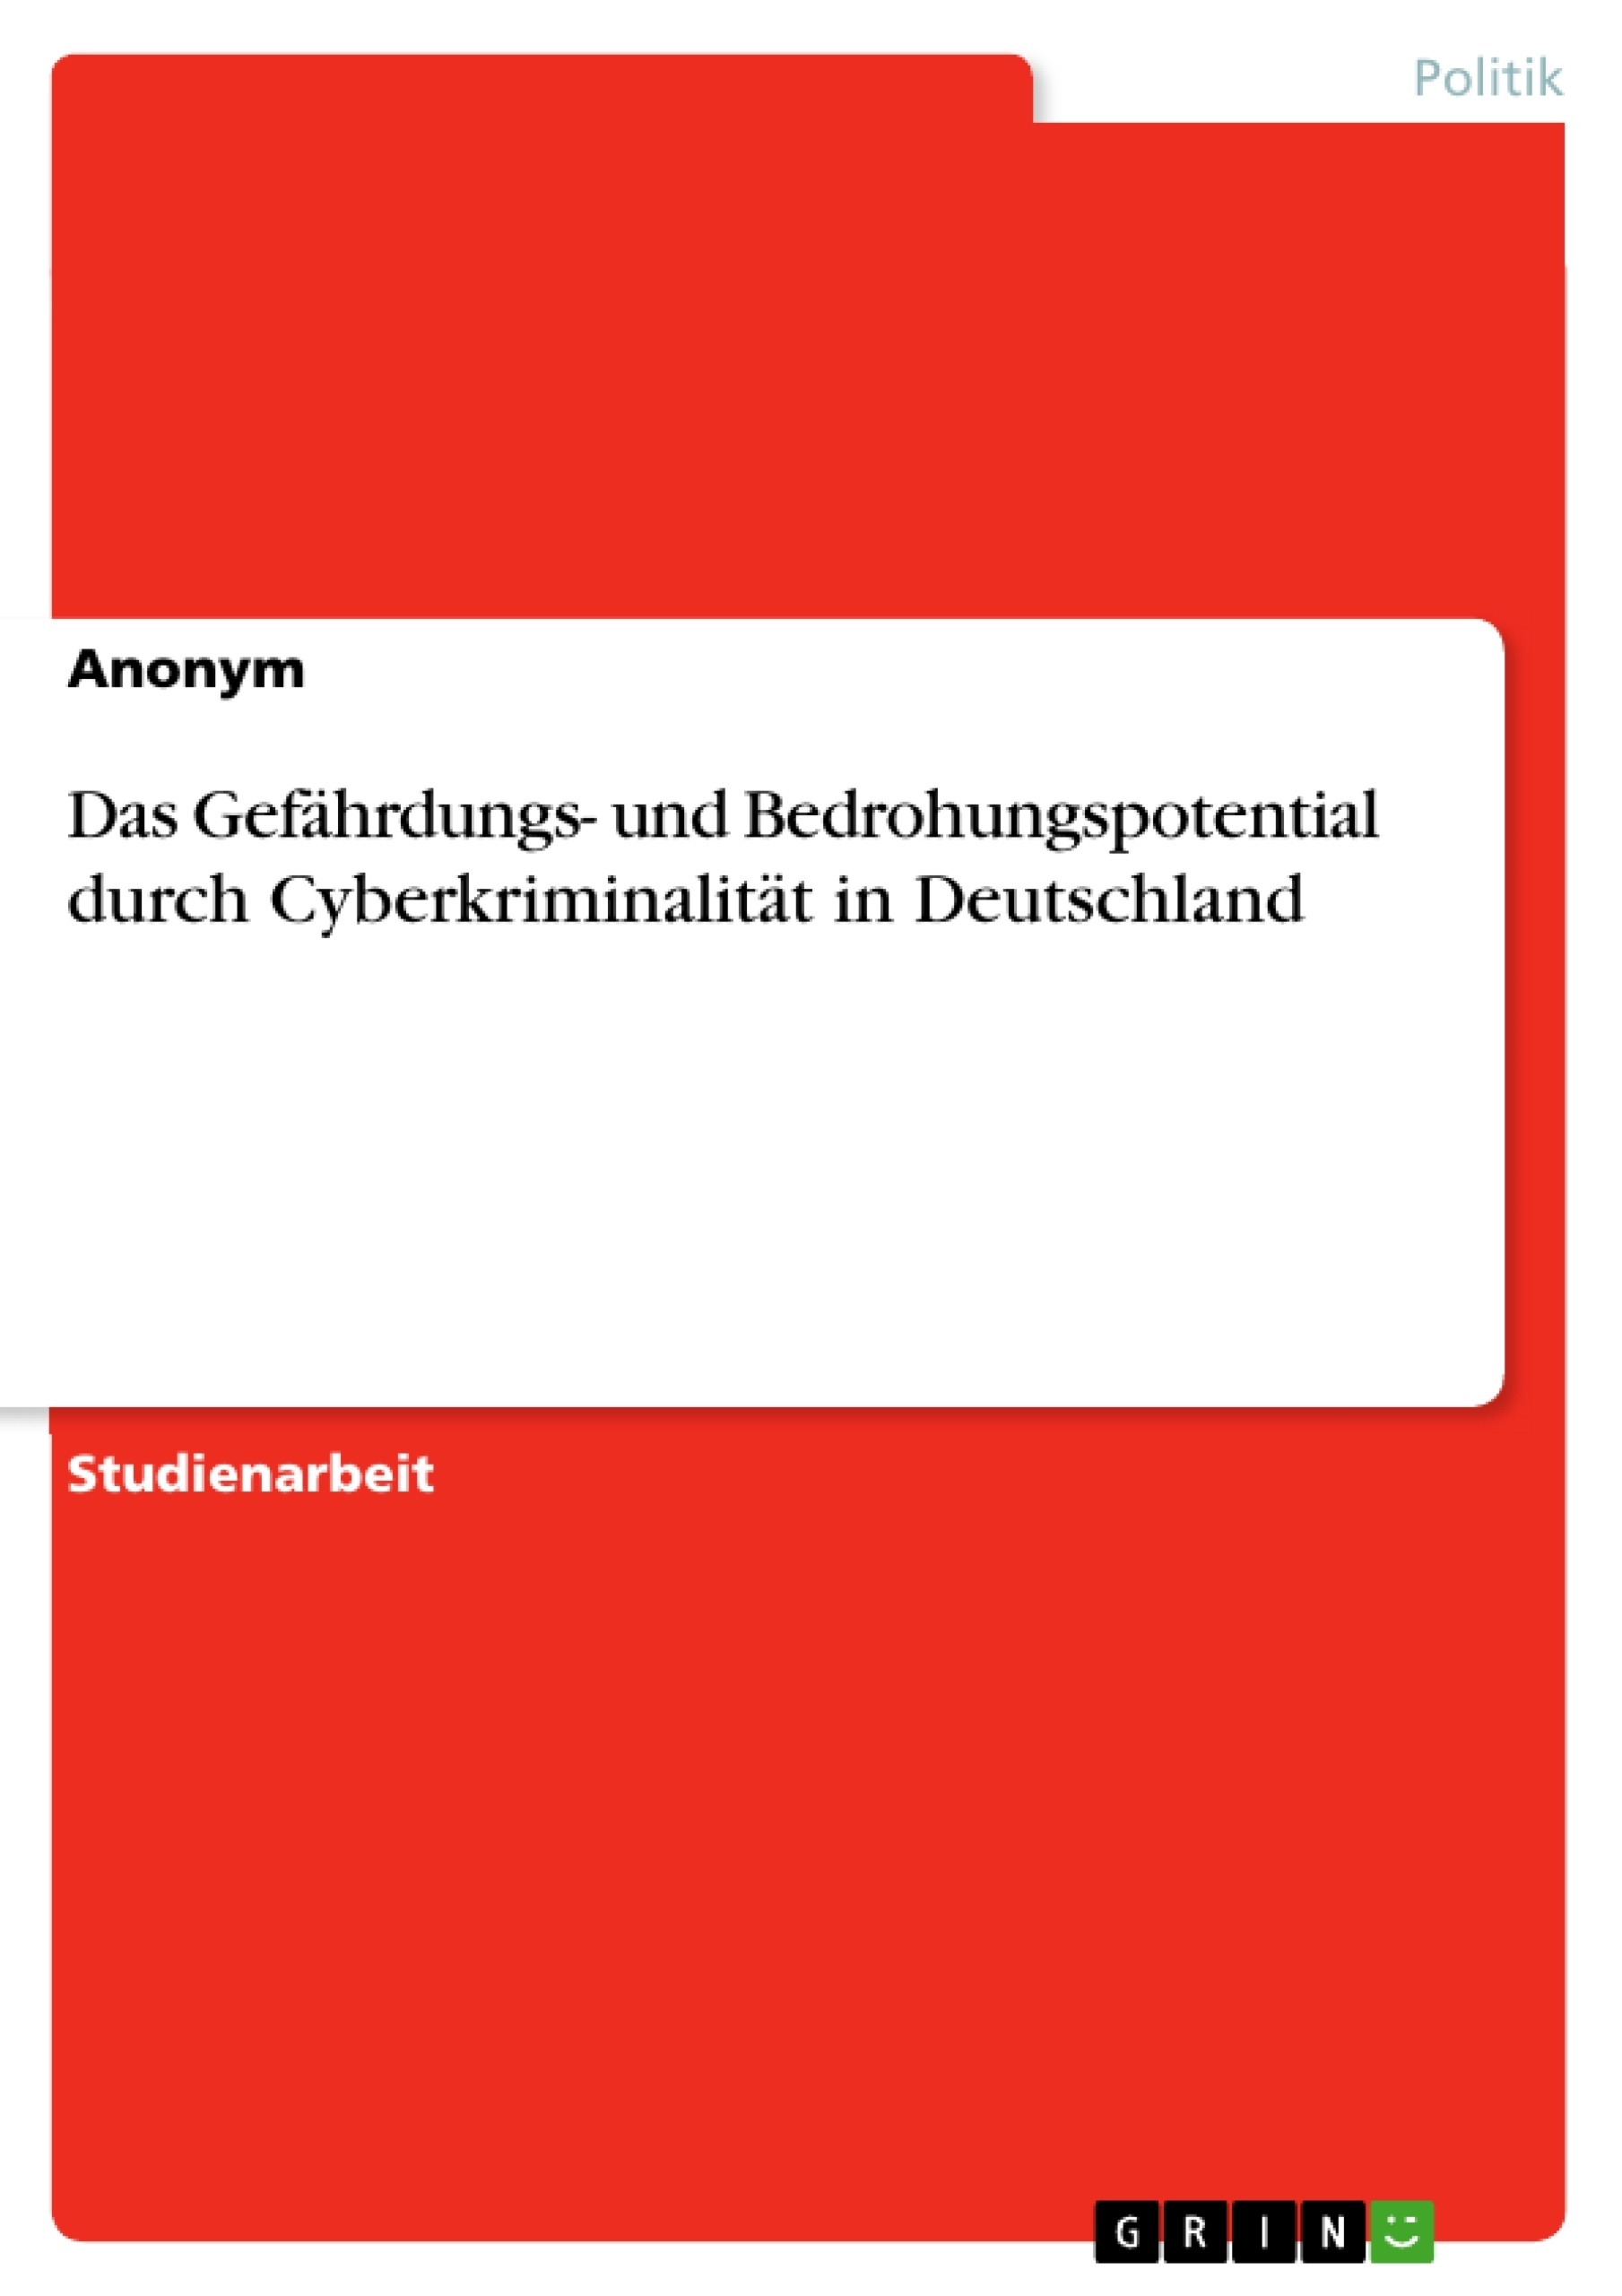 Title: Das Gefährdungs- und Bedrohungspotential durch Cyberkriminalität  in Deutschland